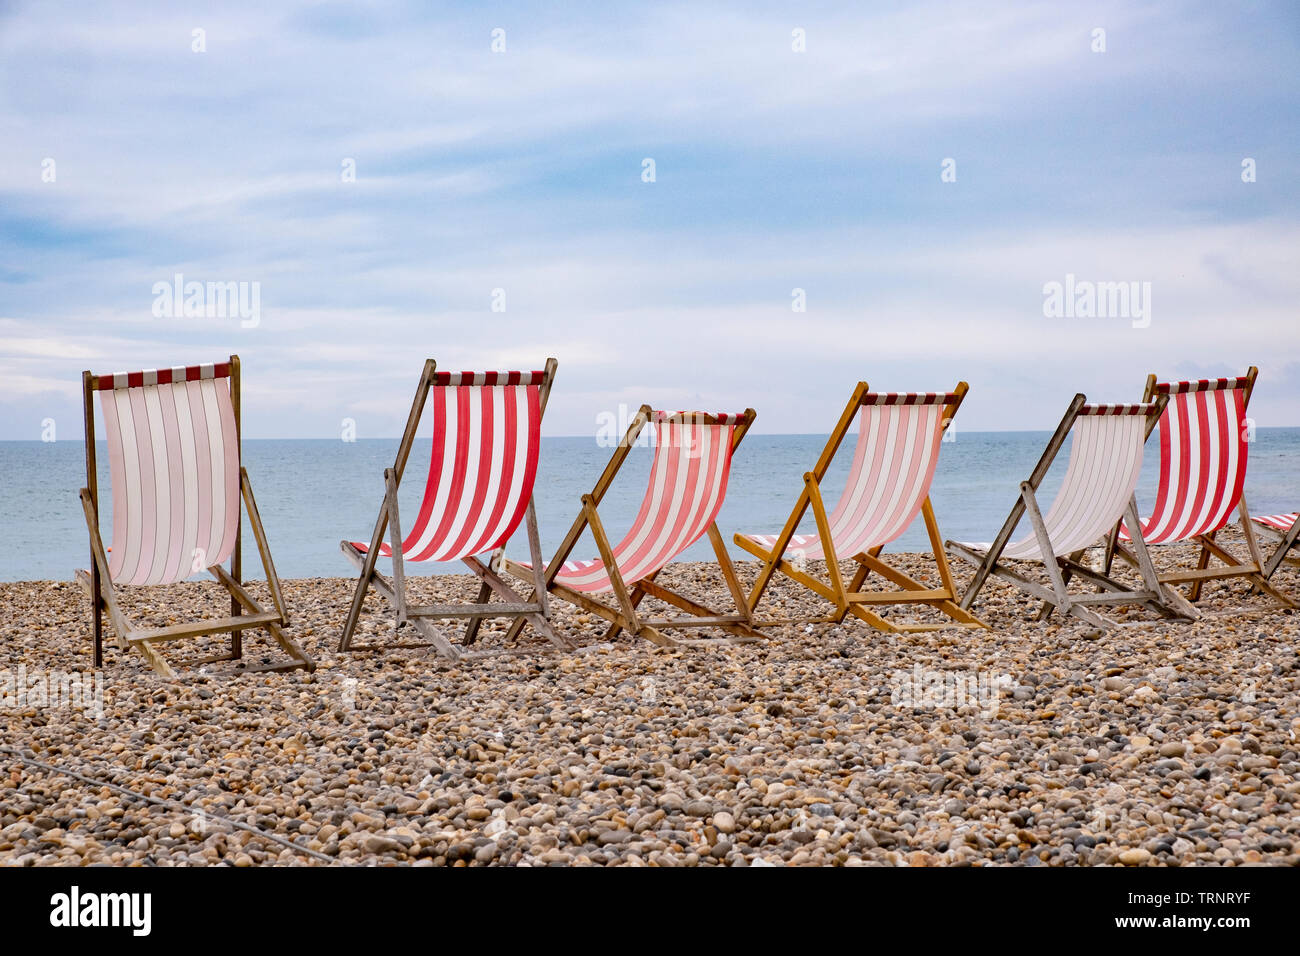 Sedie a sdraio sulla spiaggia, tipico inglese vacanza mare scena, strisce rosse e bianche Foto Stock